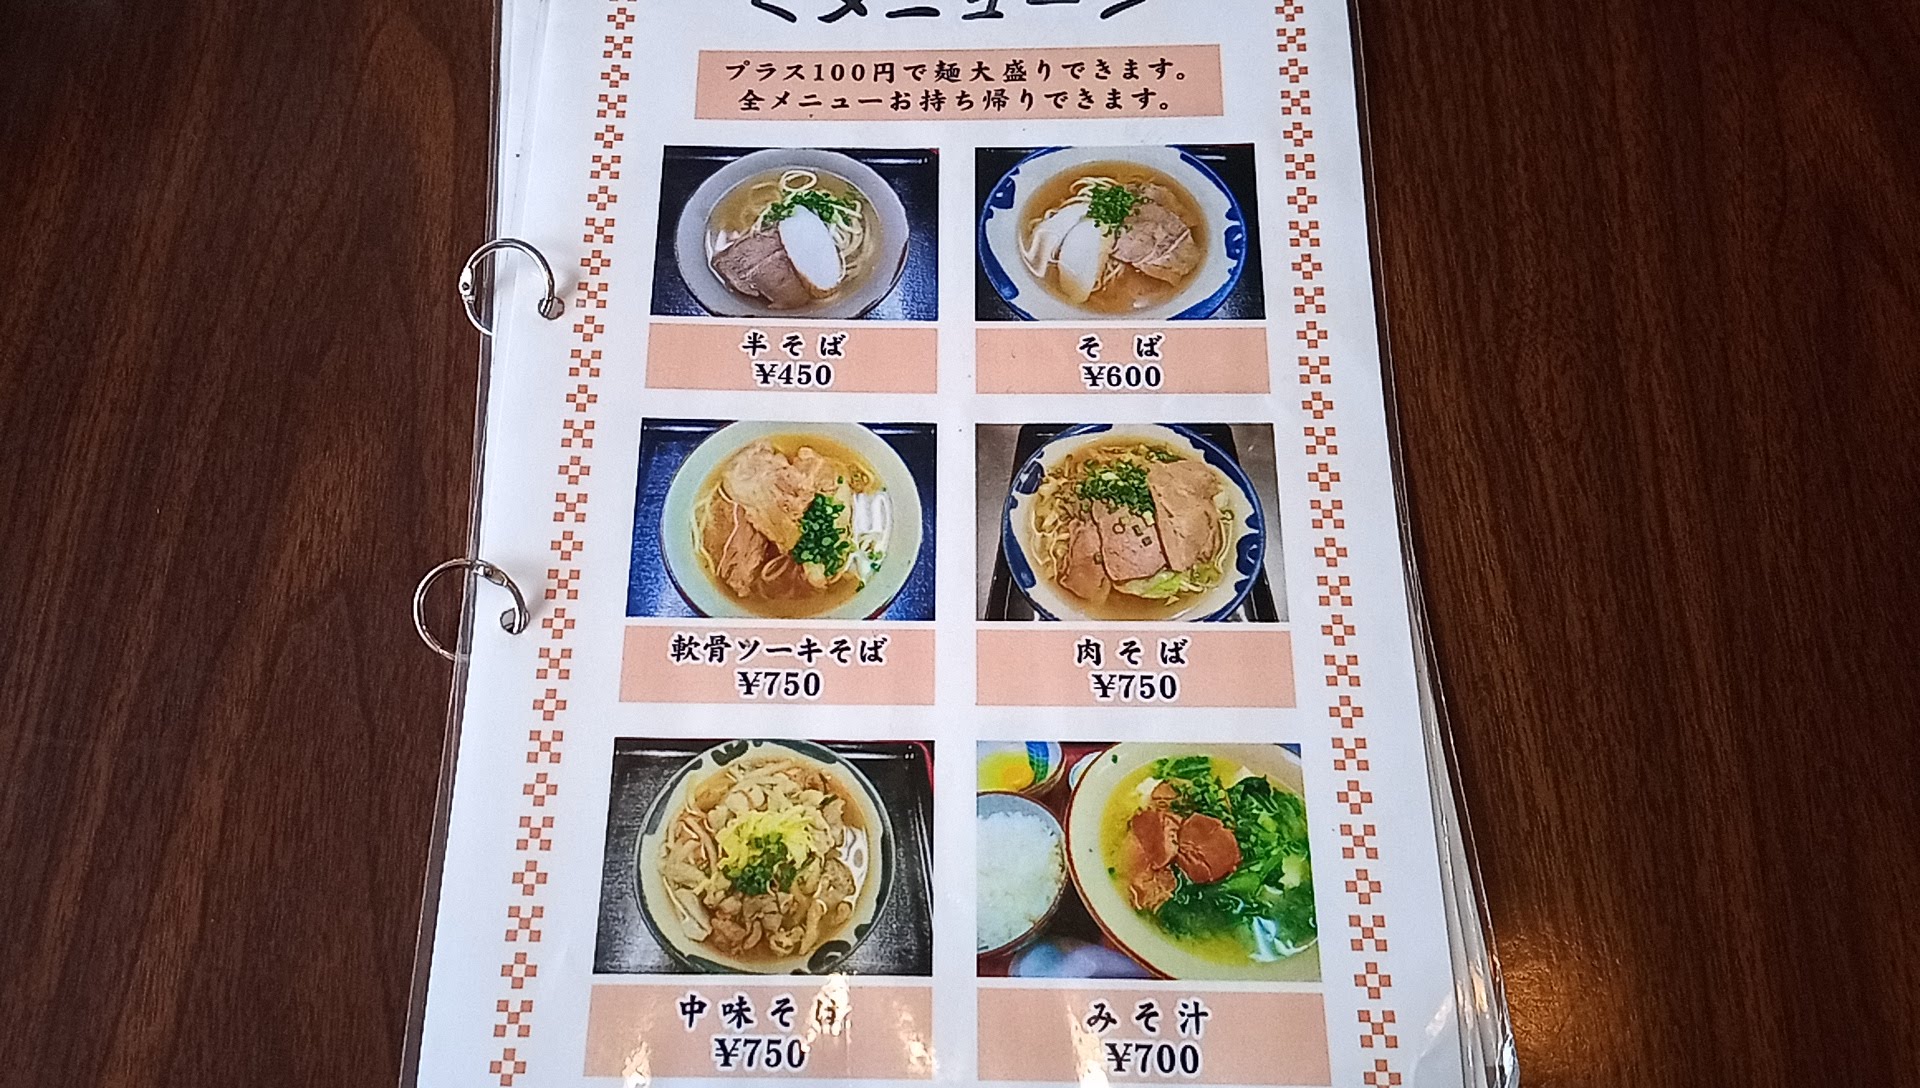 the menu for Yutanza Soba 1